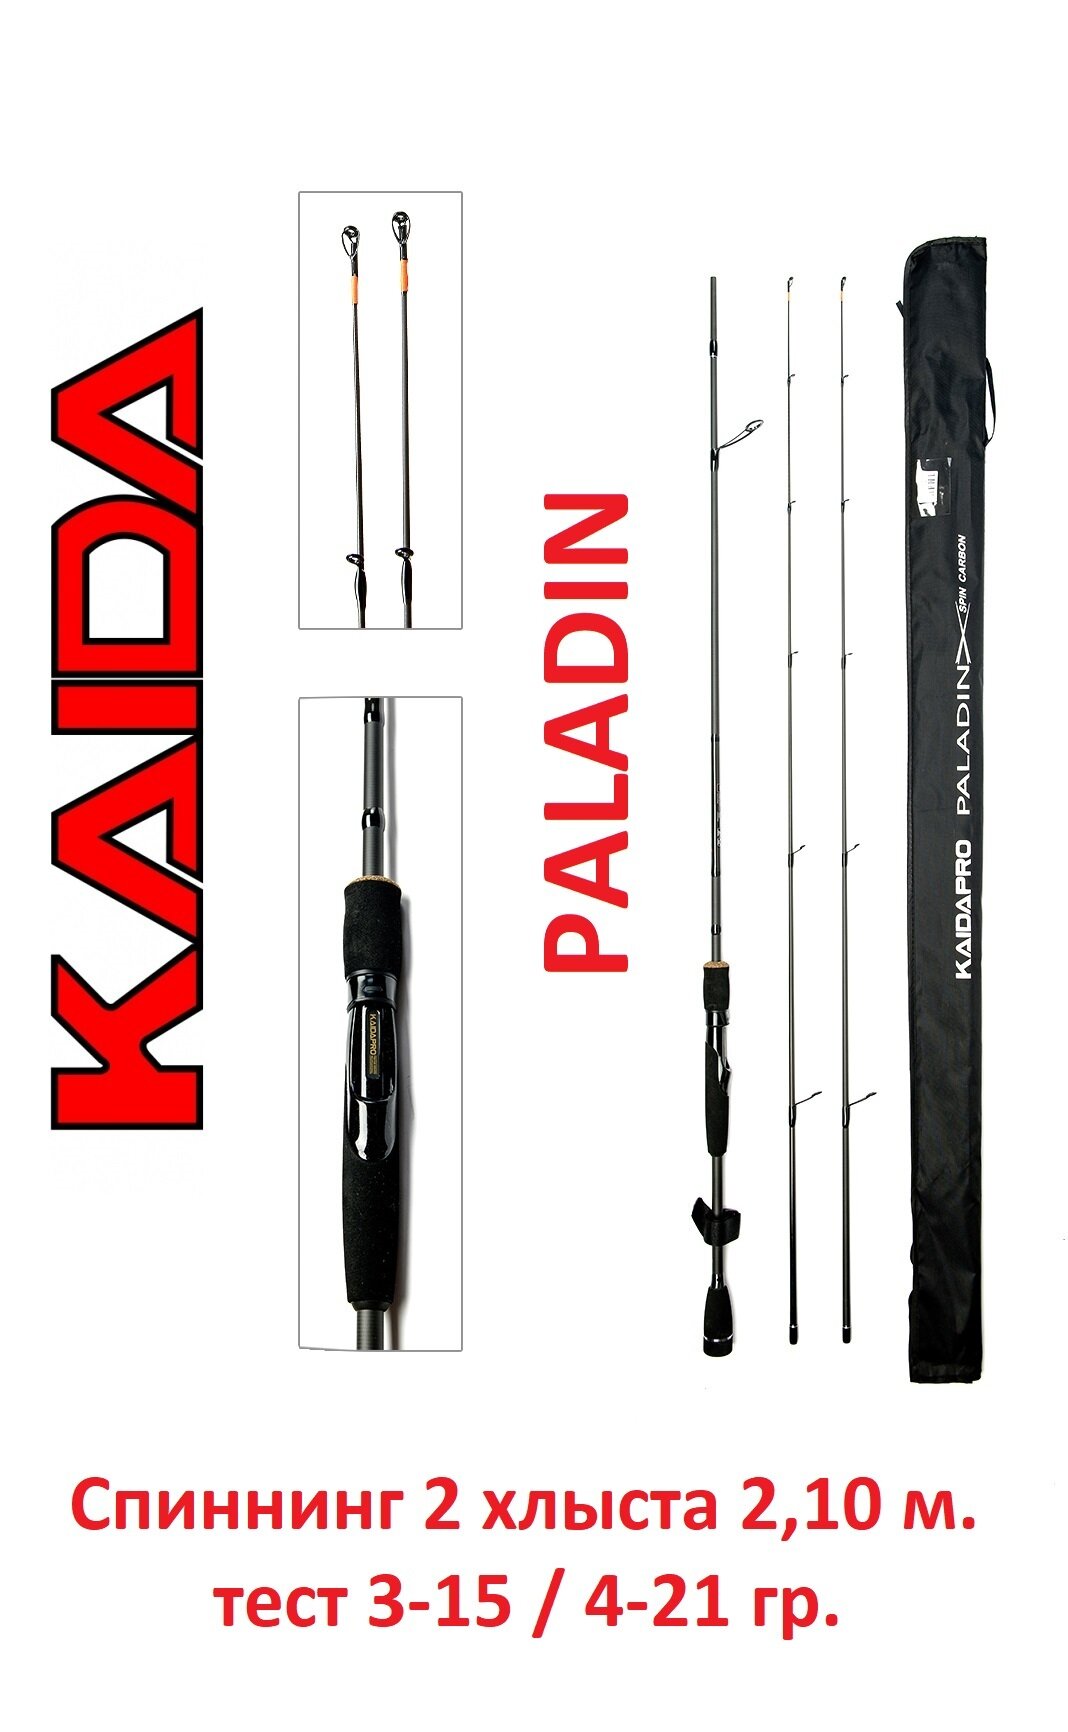 Спиннинг Kaida Paladin 2,10 метра тест 3-15 и 4-21 гр. (2 хлыста)